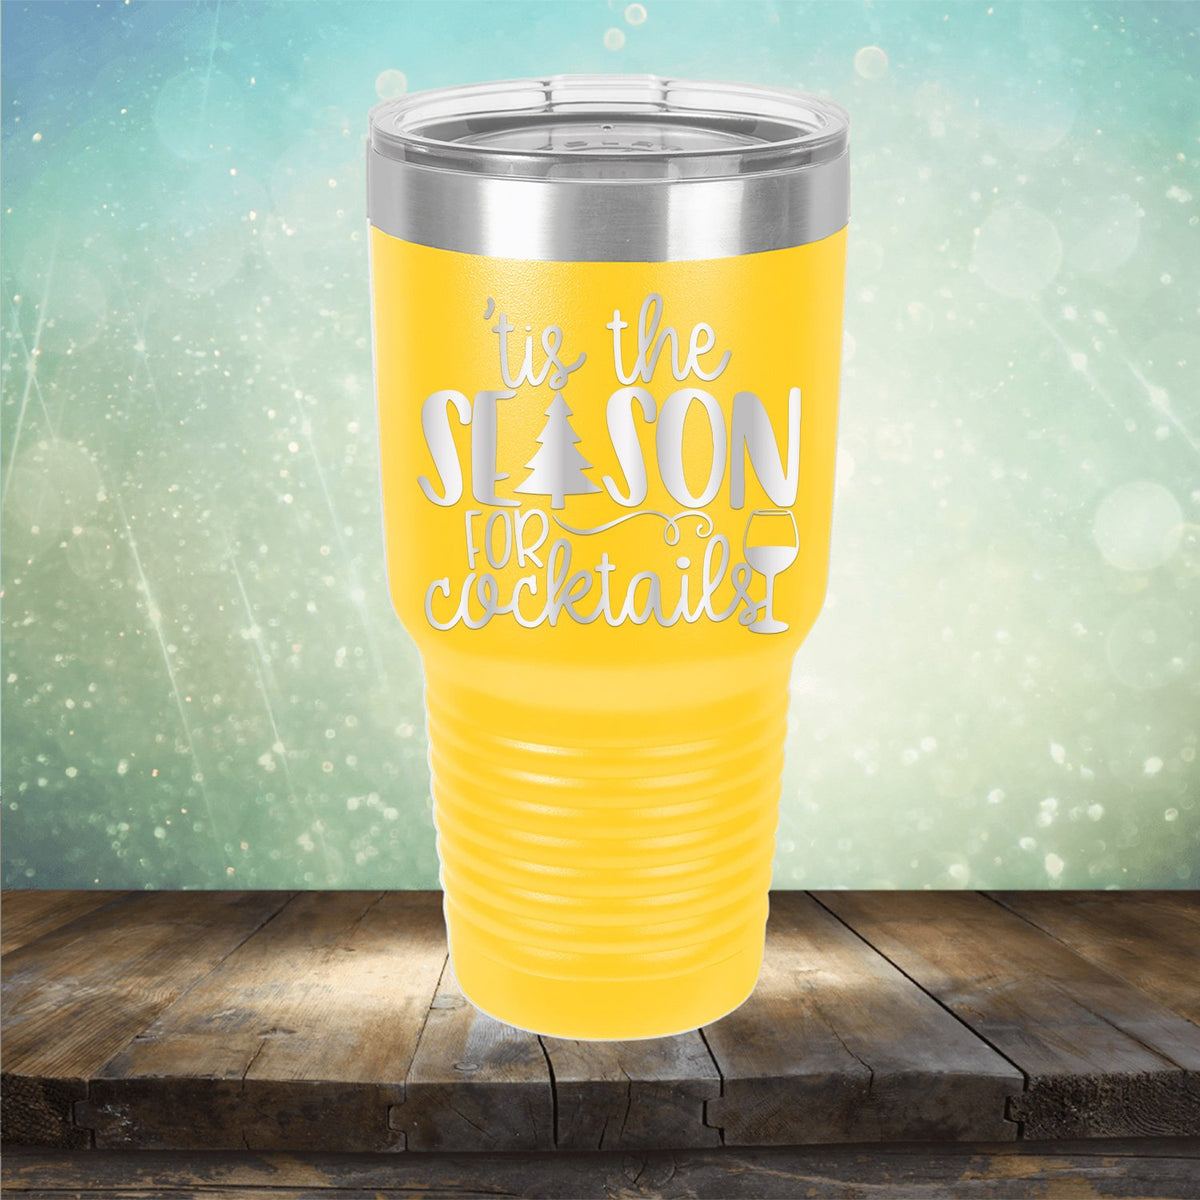 Tis the Season for Cocktails - Laser Etched Tumbler Mug